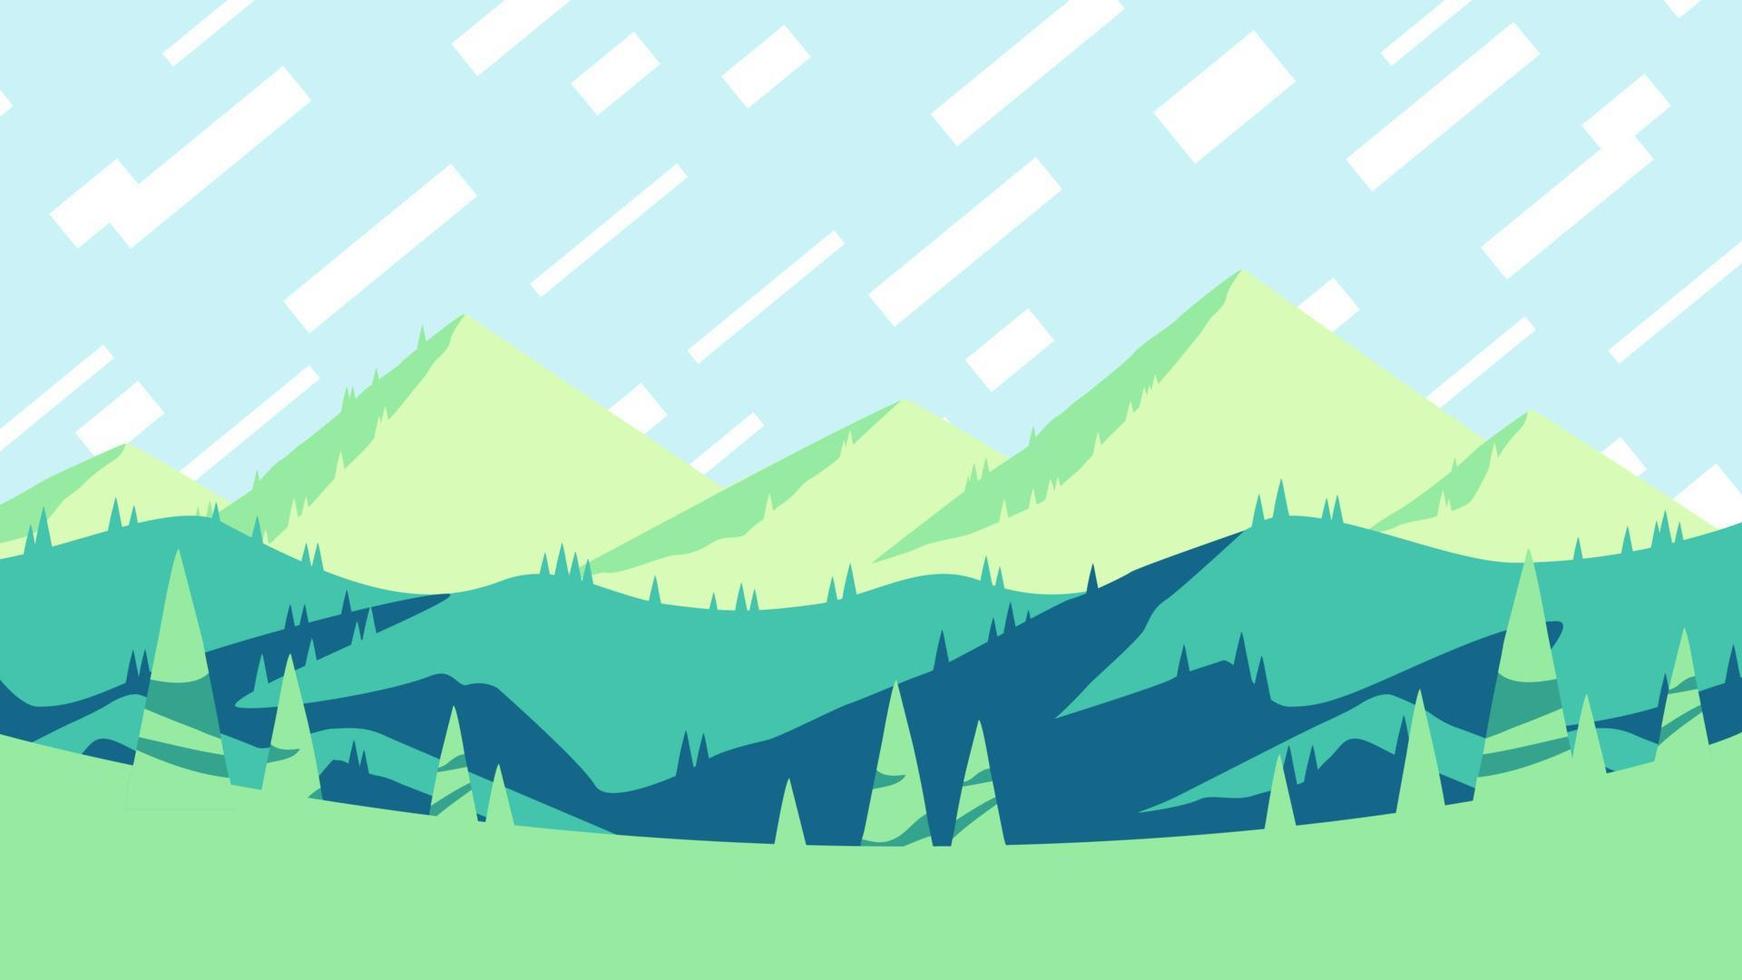 temporada de verão nas montanhas, arte de cartaz horizontal de design plano. pôr do sol de verão sobre o cartaz de colinas verdes, ilustração vetorial de paisagem. vetor